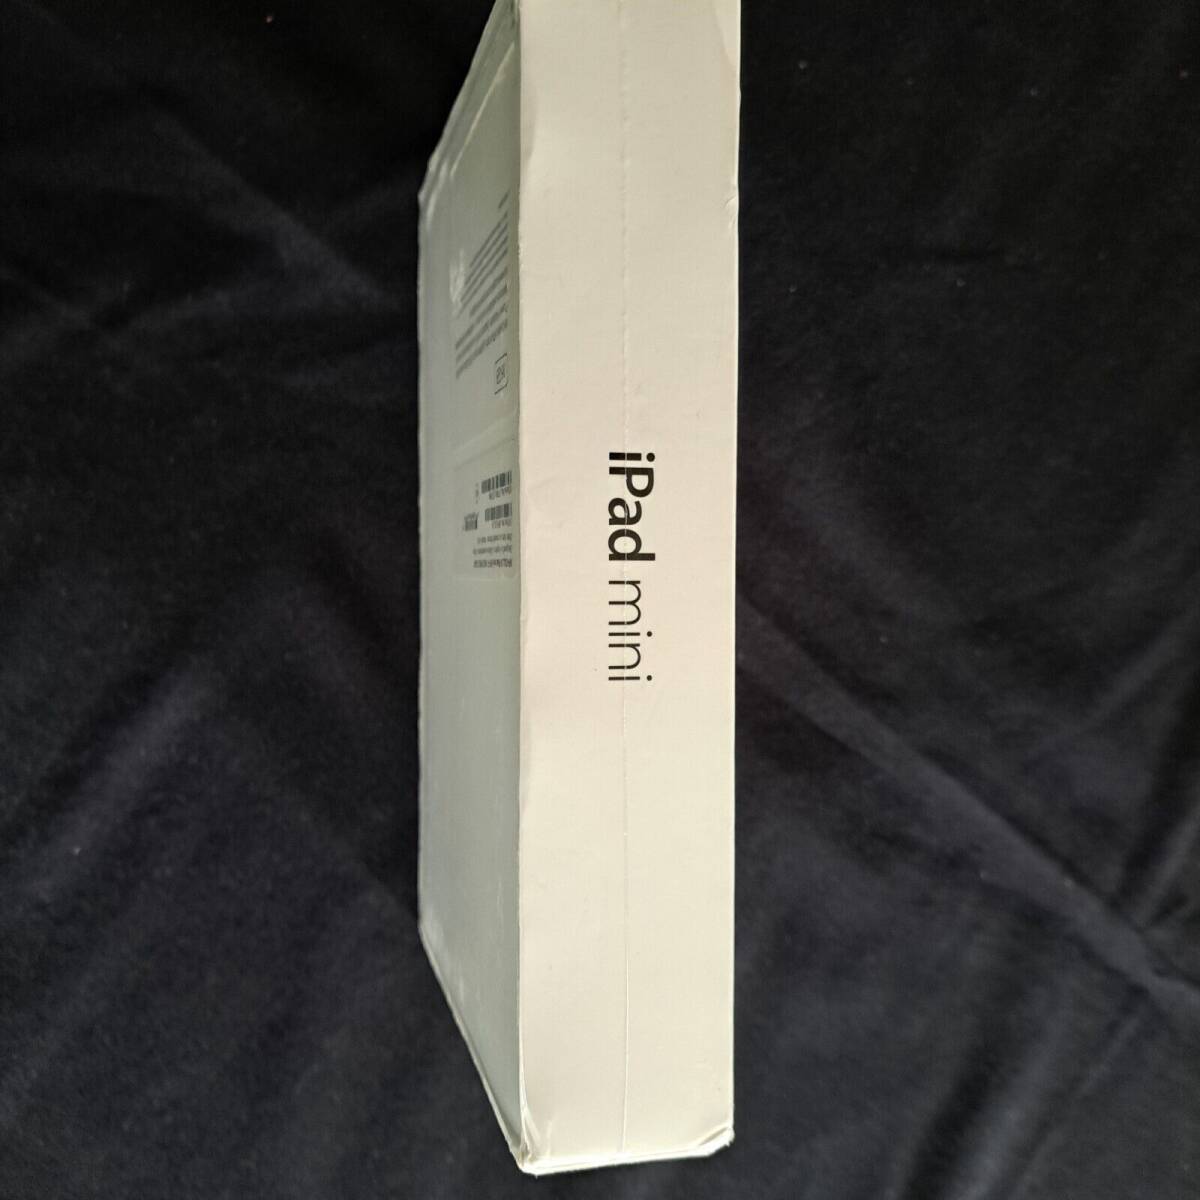 Apple iPad Mini MF-432LL/A 16GB Wi-Fi - Gray Model A-1432 New In Sealed Box 海外 即決_Apple iPad Mini MF 4